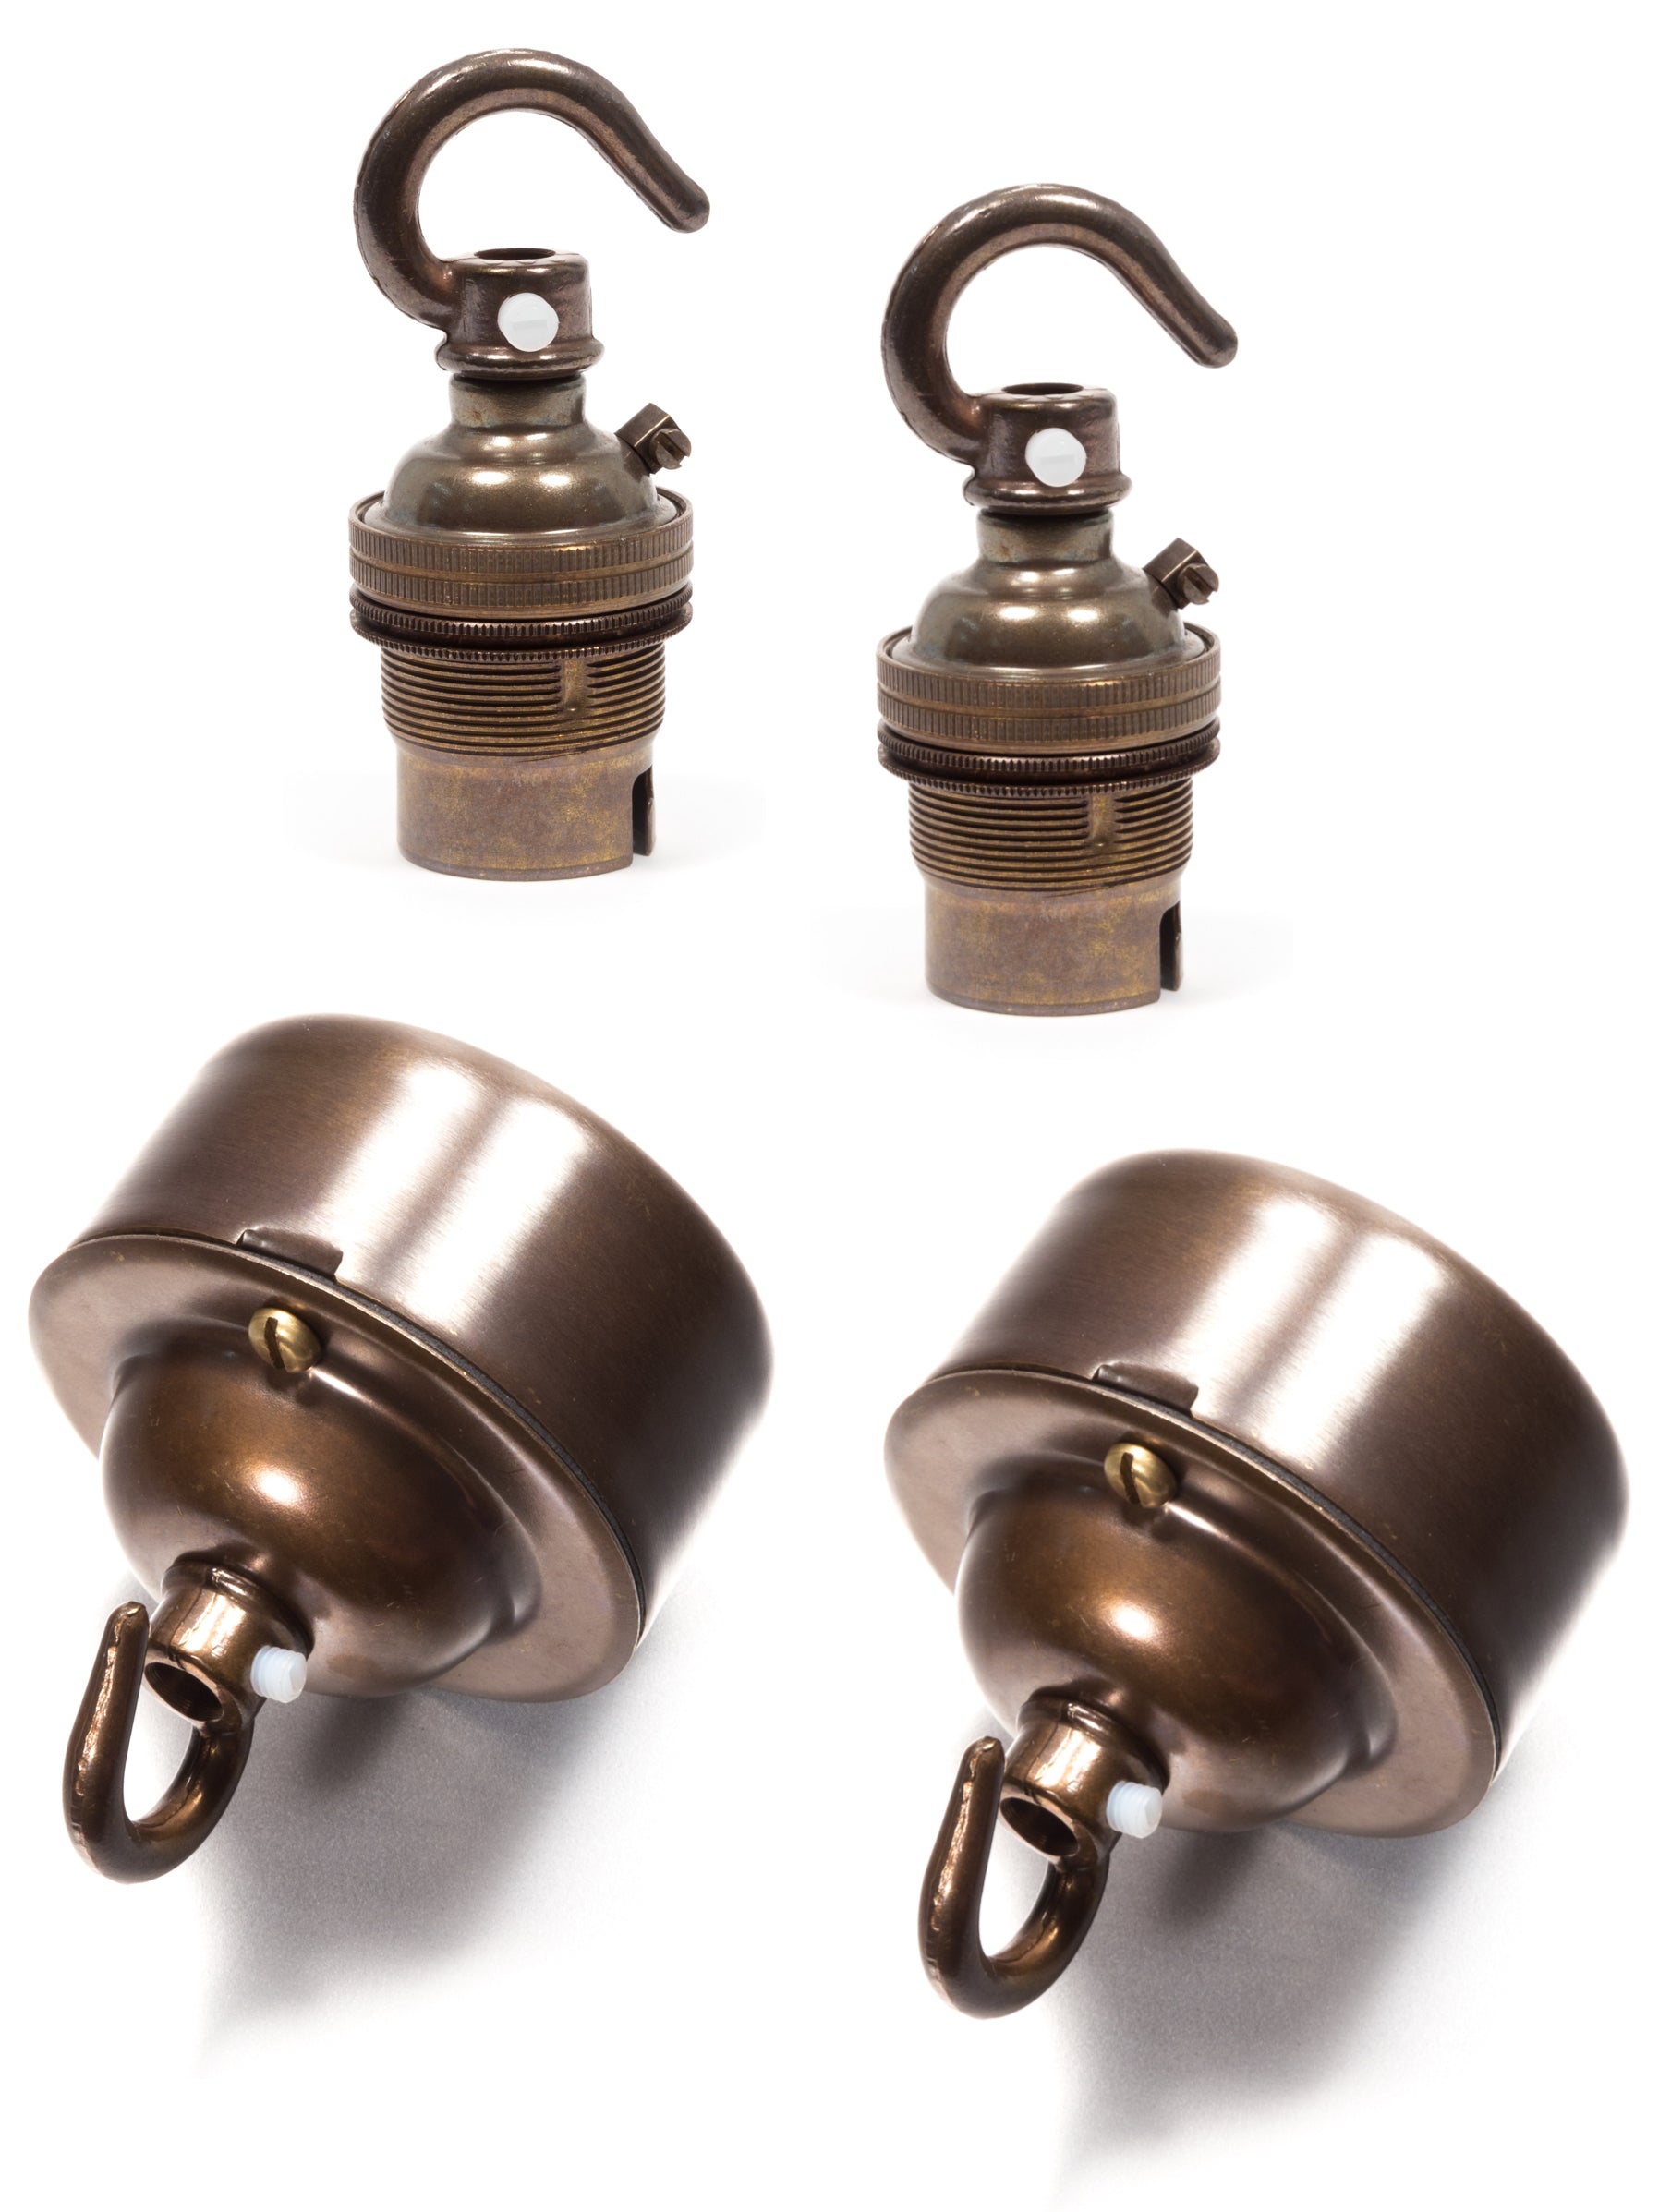 Vintage Brass Hooked Pattress & B22 Lamp Holder Bundle | End-Of-Line